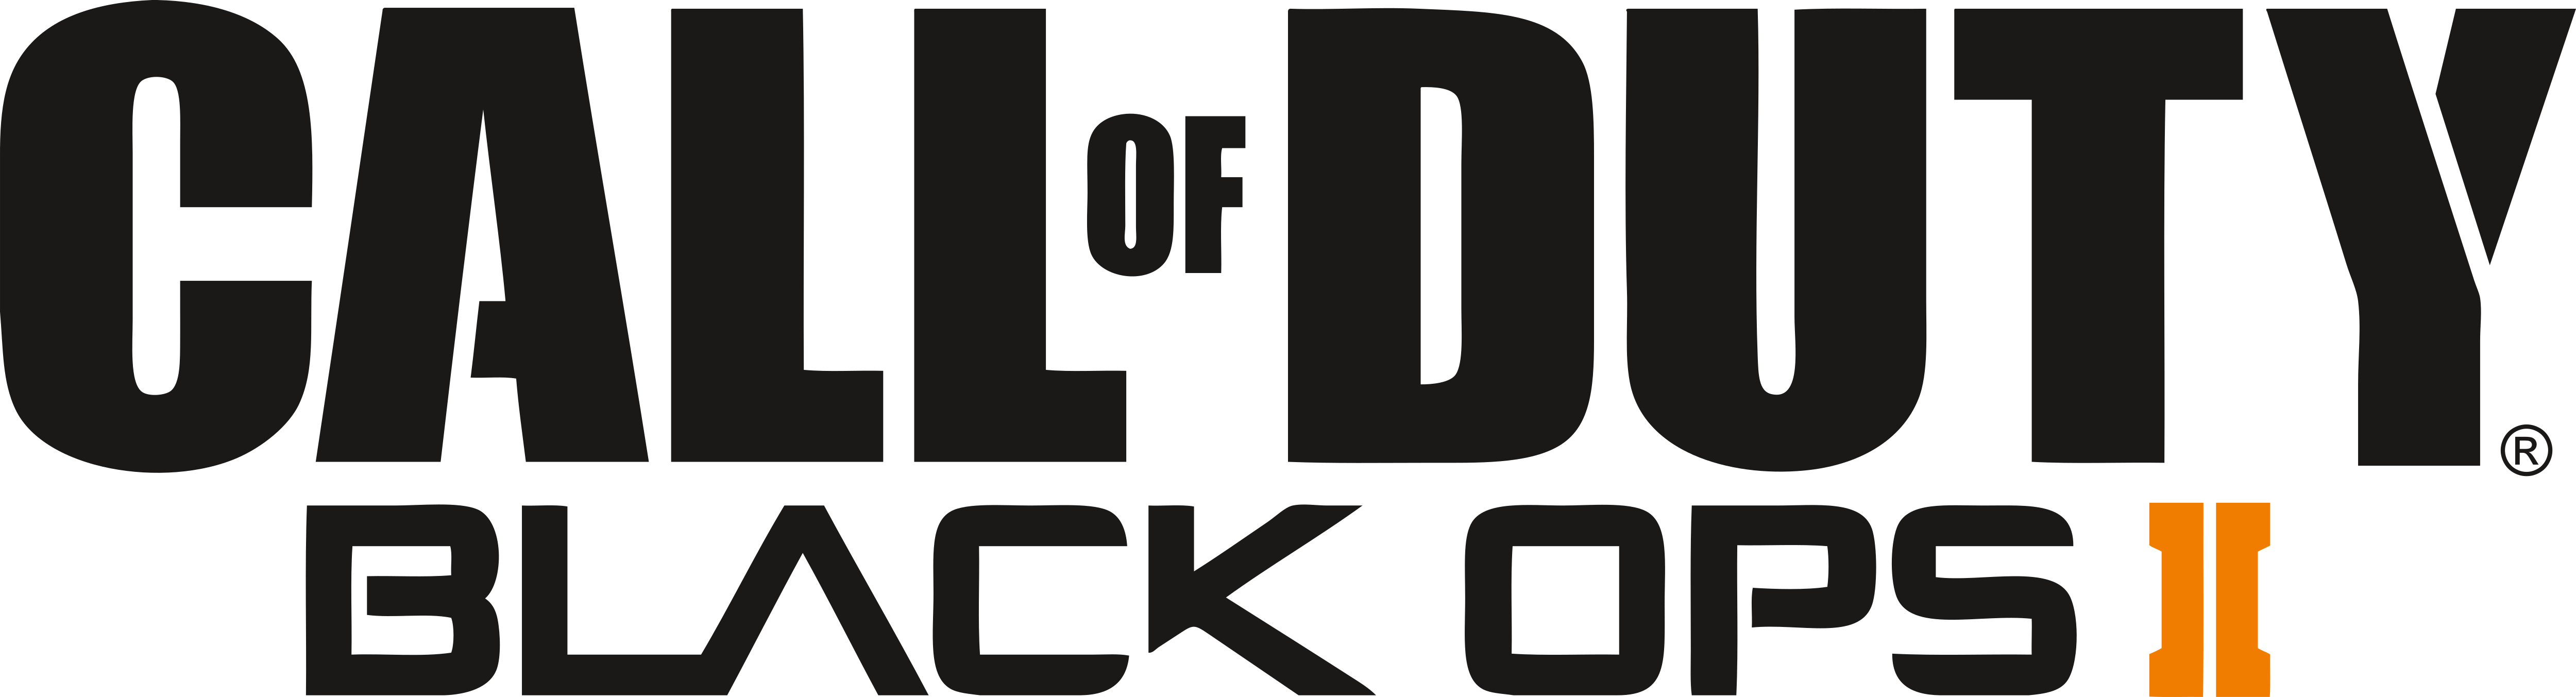 Call Of Duty Logo Transparent - Reverasite